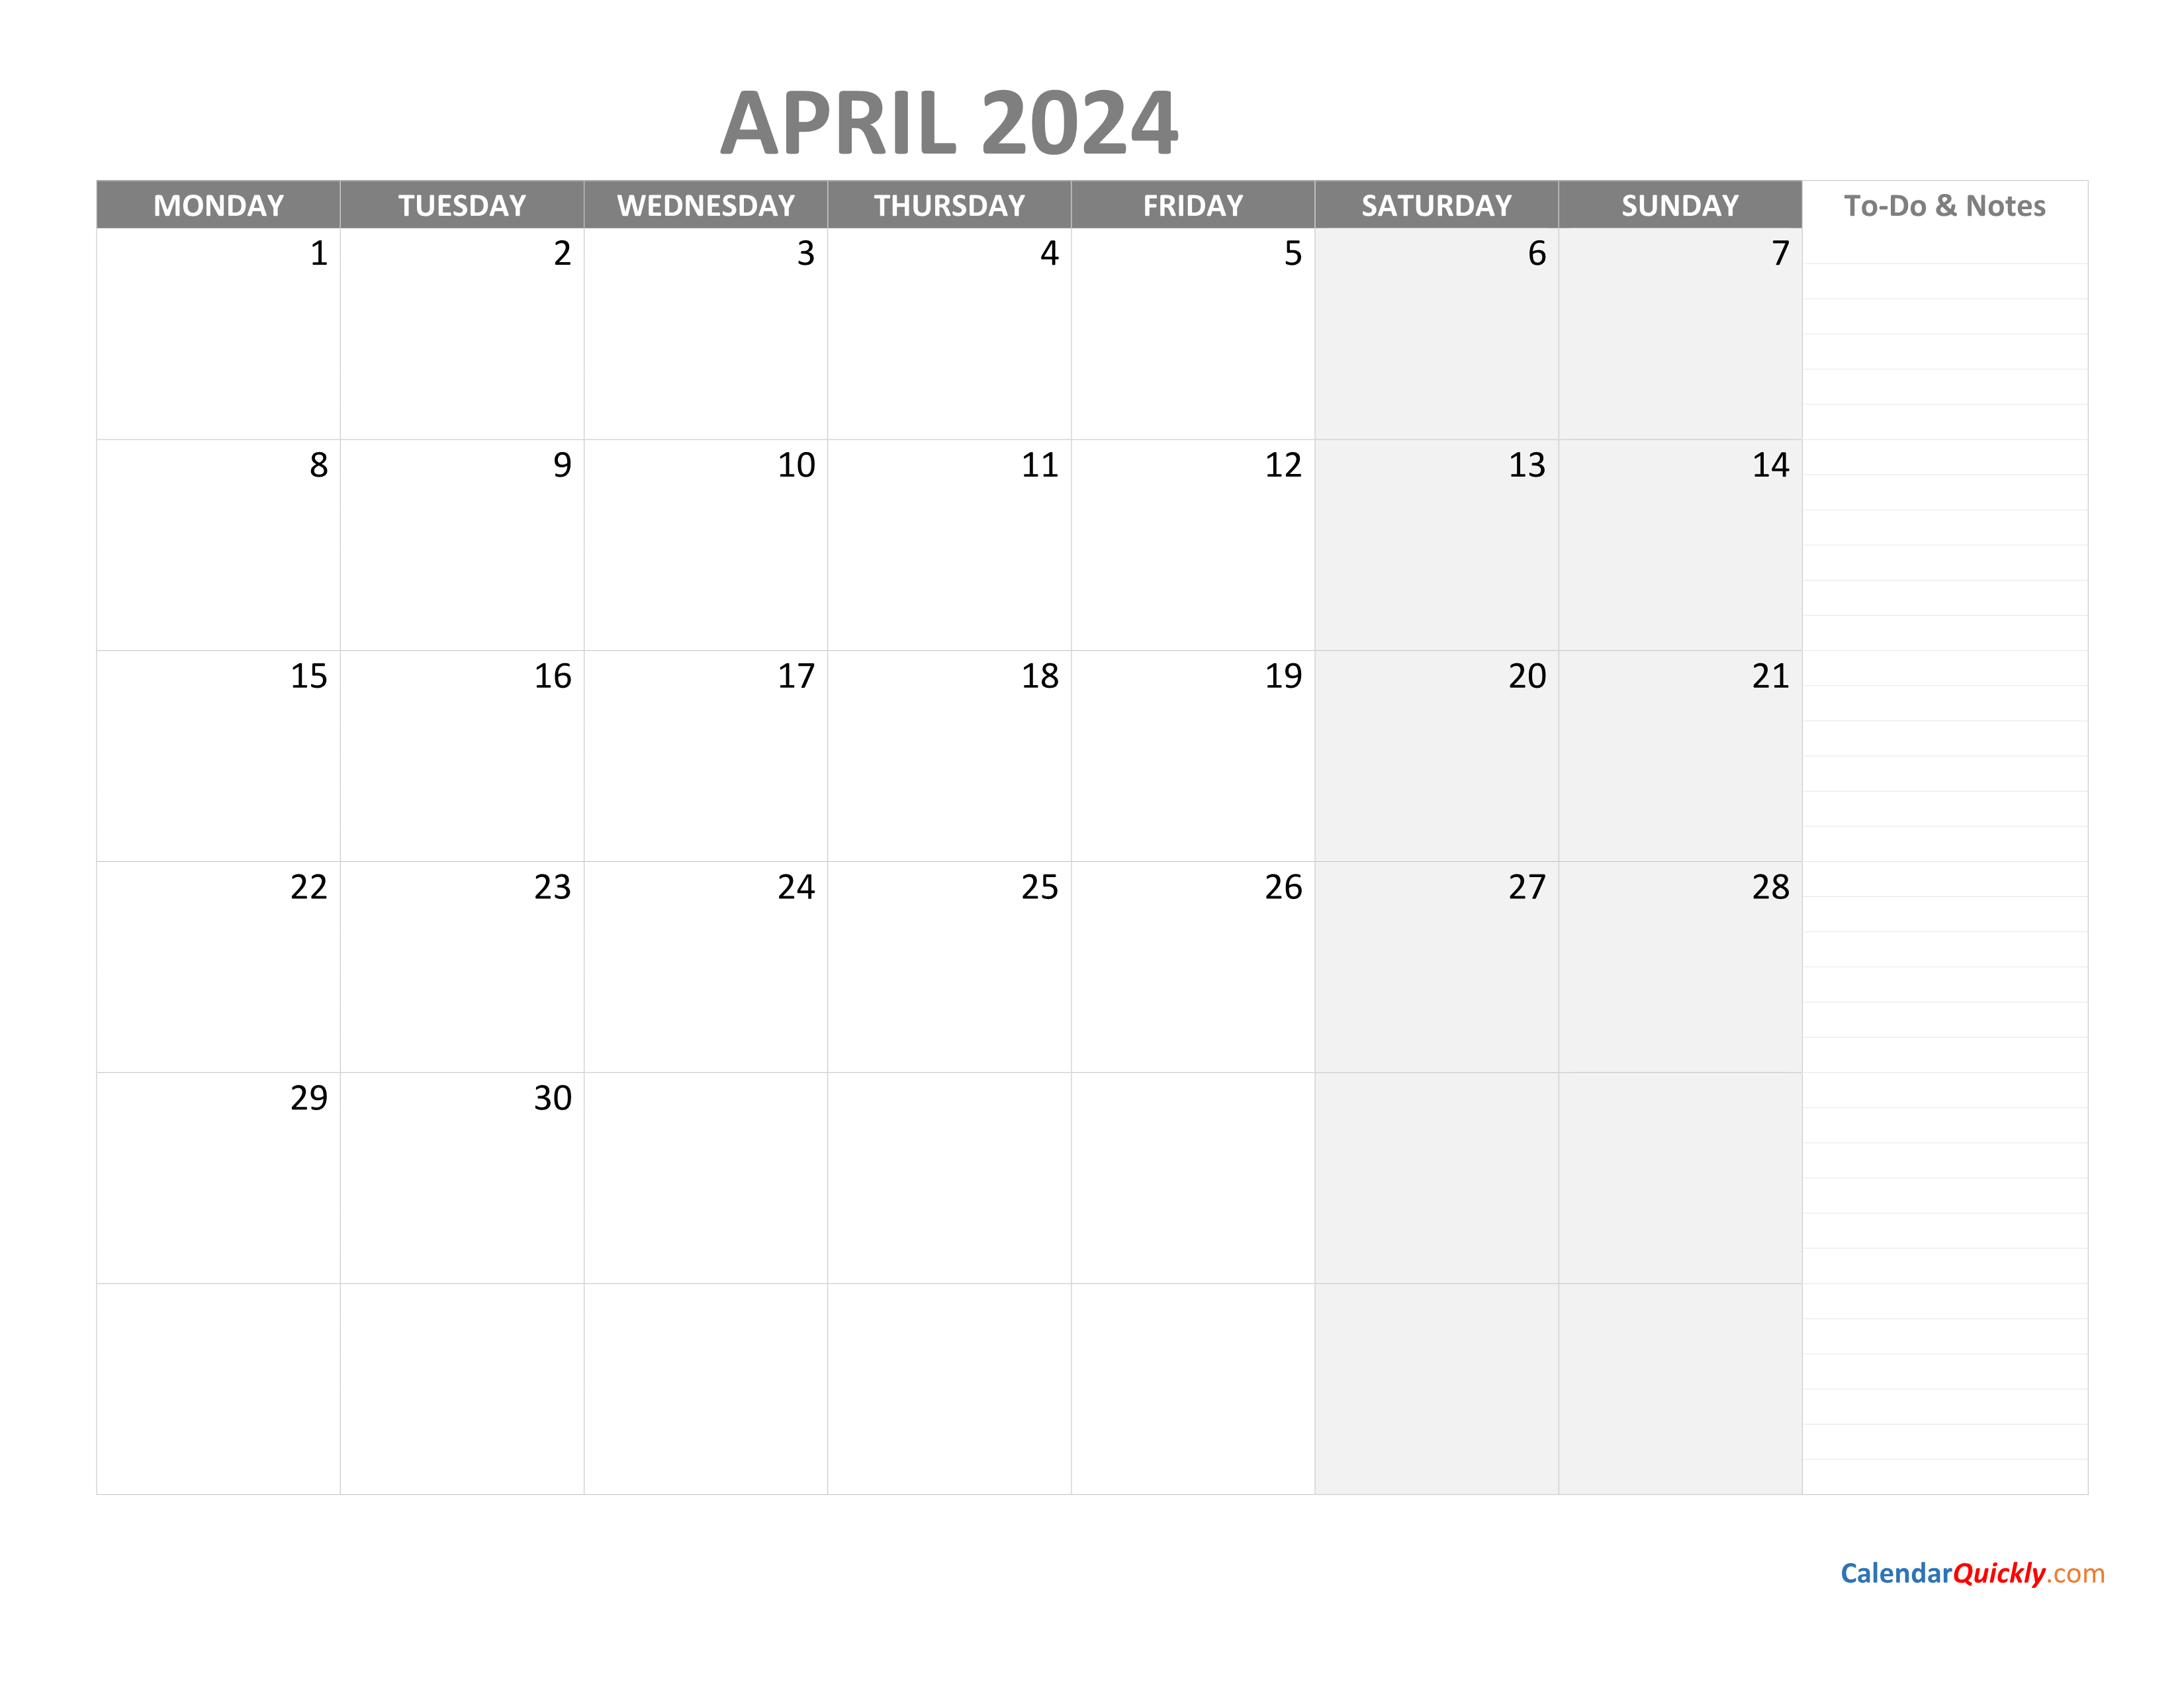 Календарь февраль март 2024 г. Календарь 2024. Календарь 2024 для заметок. April 2024 календарь. Календарь February 2024.